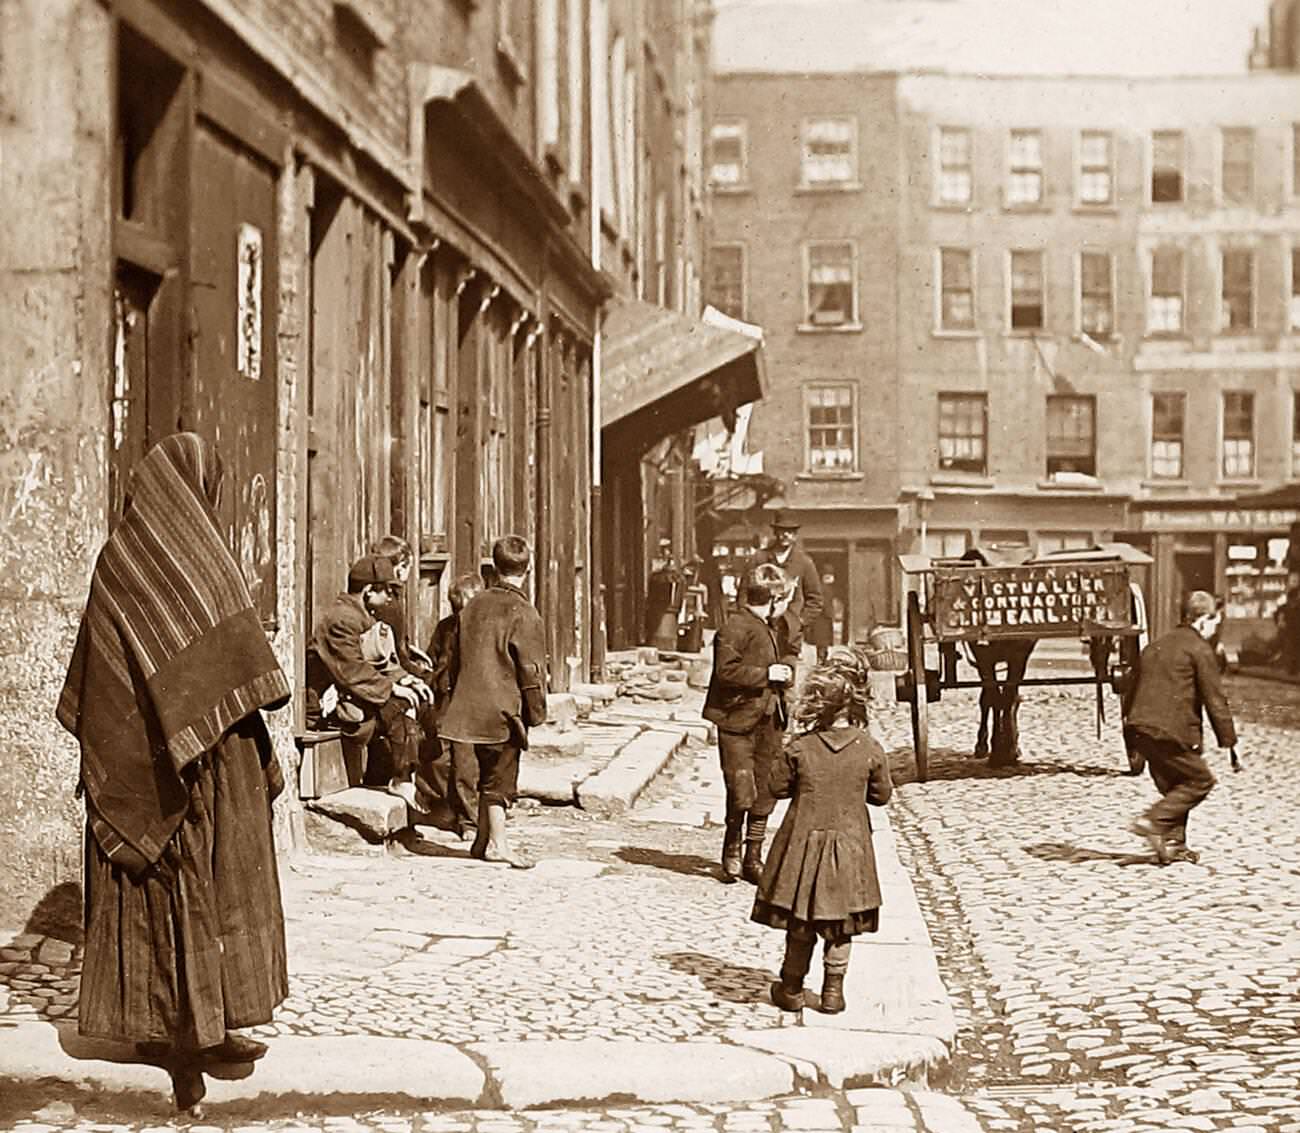 Dublin street children, 1890s